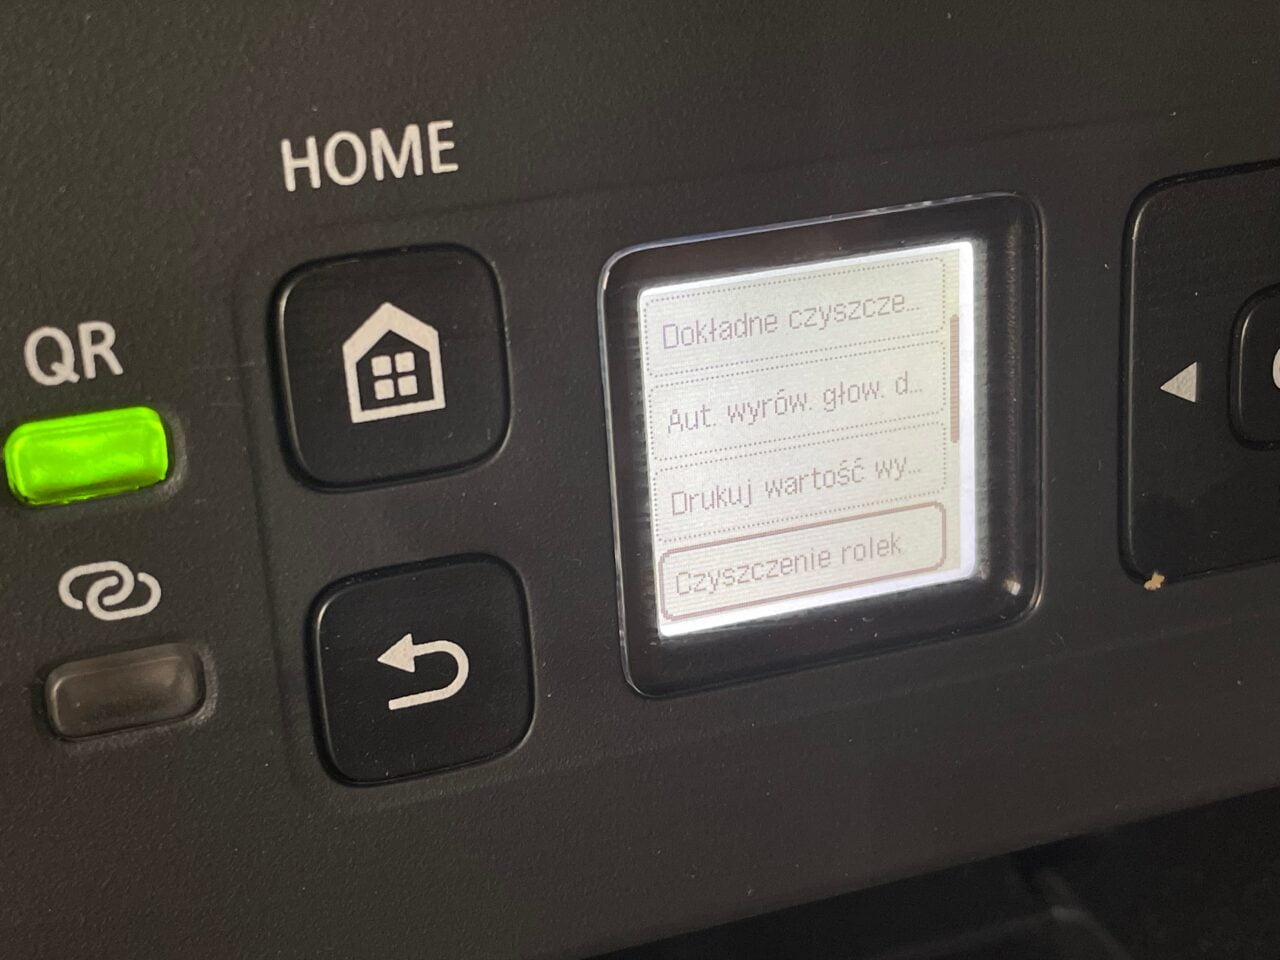 Panel sterowania urządzenia z ekranem LCD wyświetlającym opcje konserwacji, przyciskami nawigacyjnymi i oznaczeniami "HOME" oraz "QR".